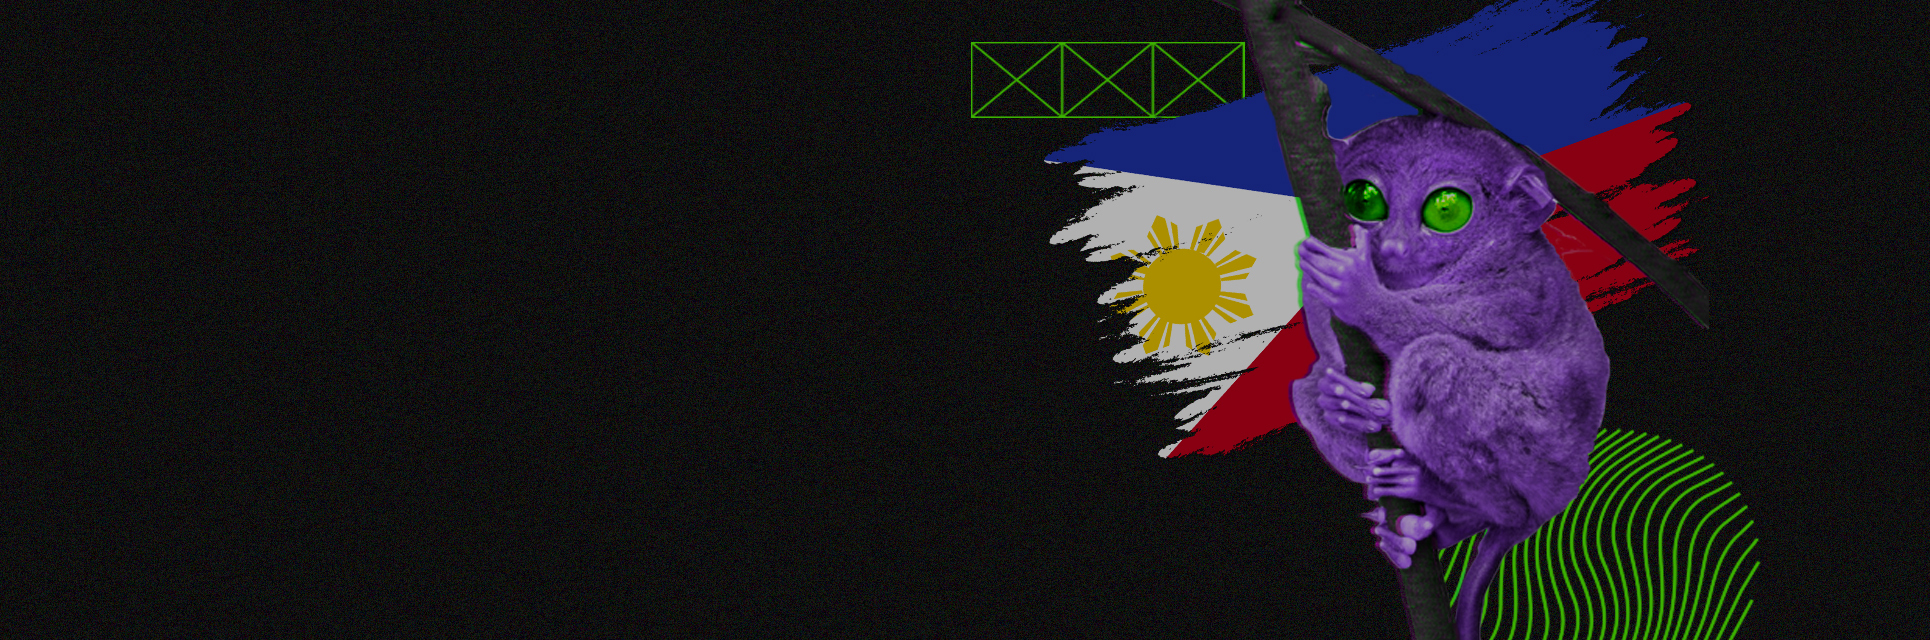 Как лить на ГЕО Филиппины: арбитражный обзор